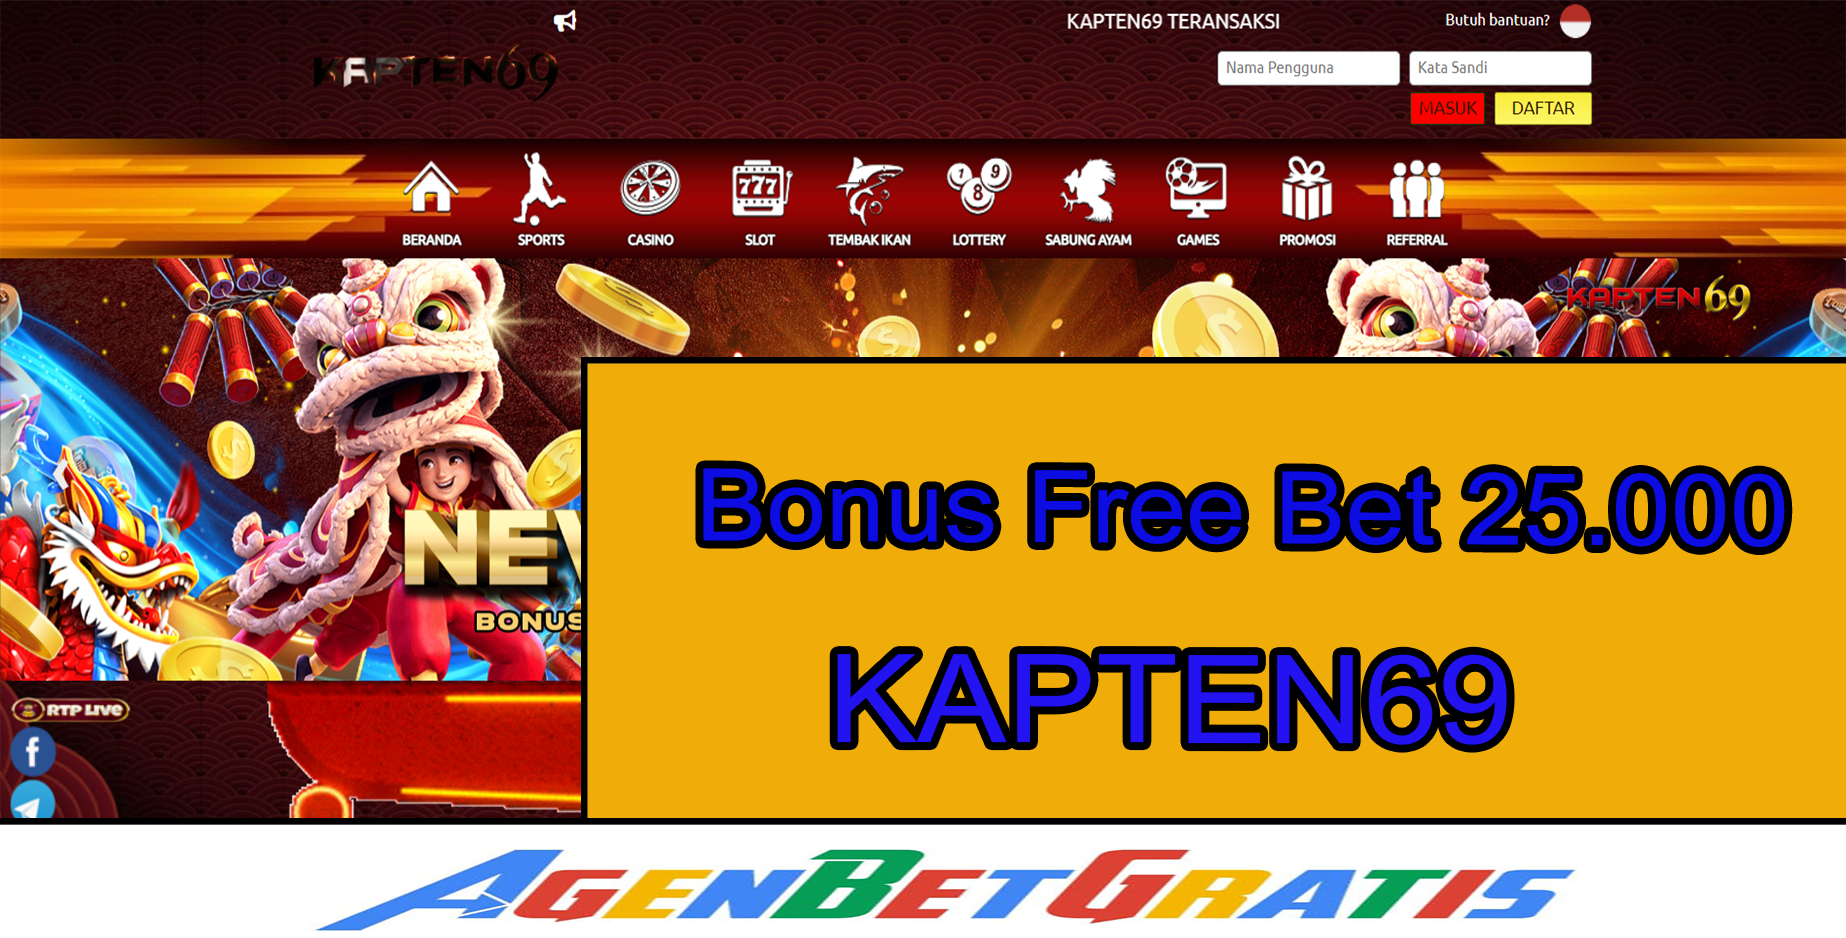 KAPTEN69 - Bonus FreeBet 25.000